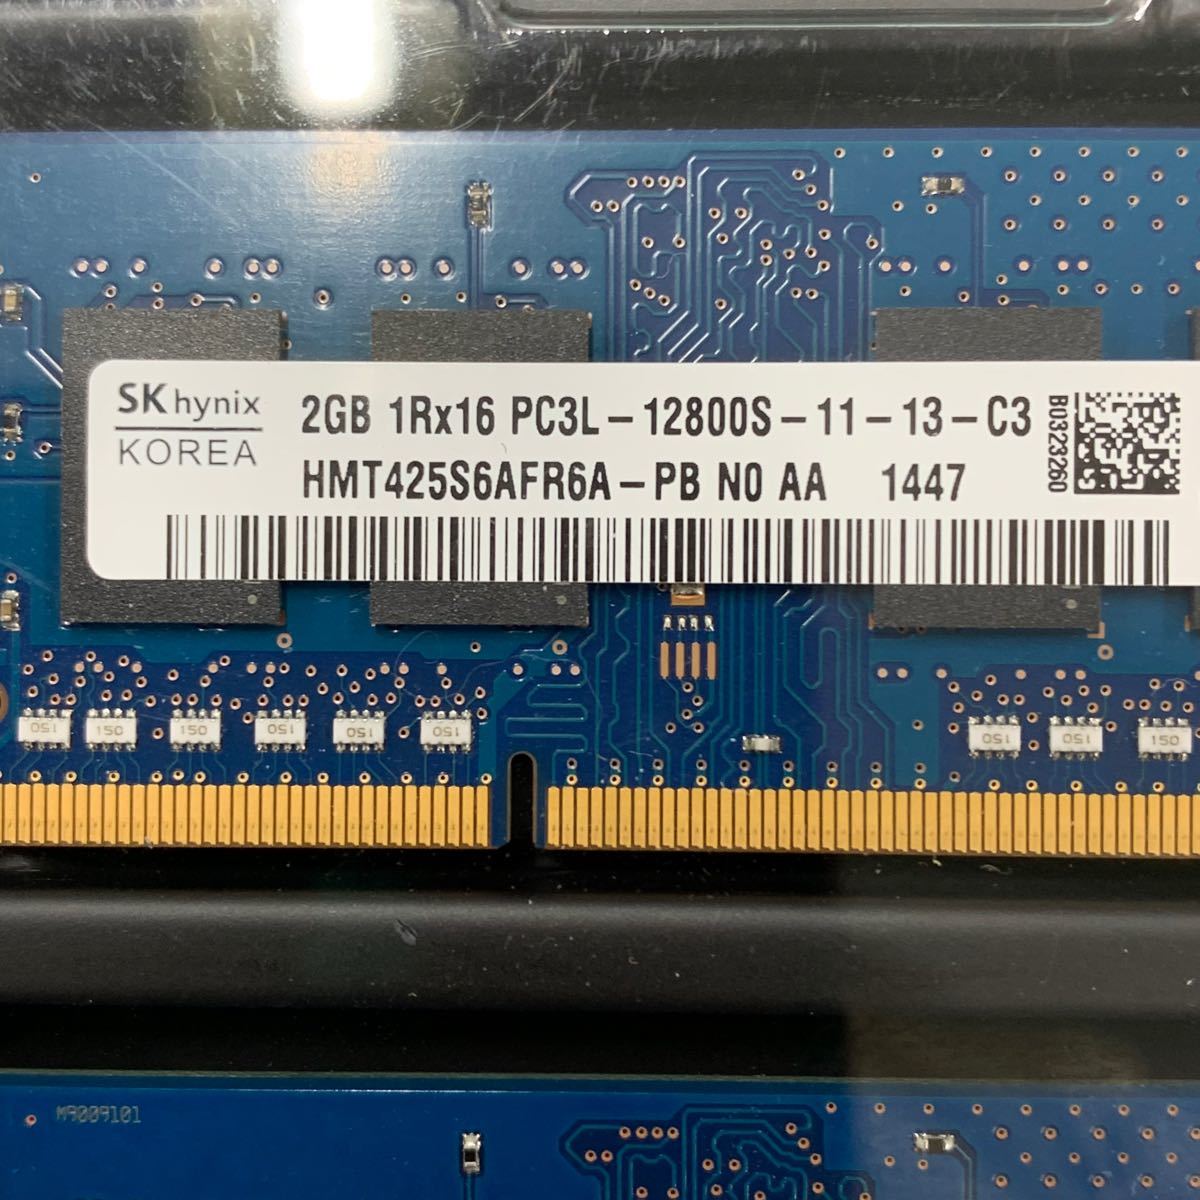 SK hynix PC3L-12800S 2GBメモリ 2枚組